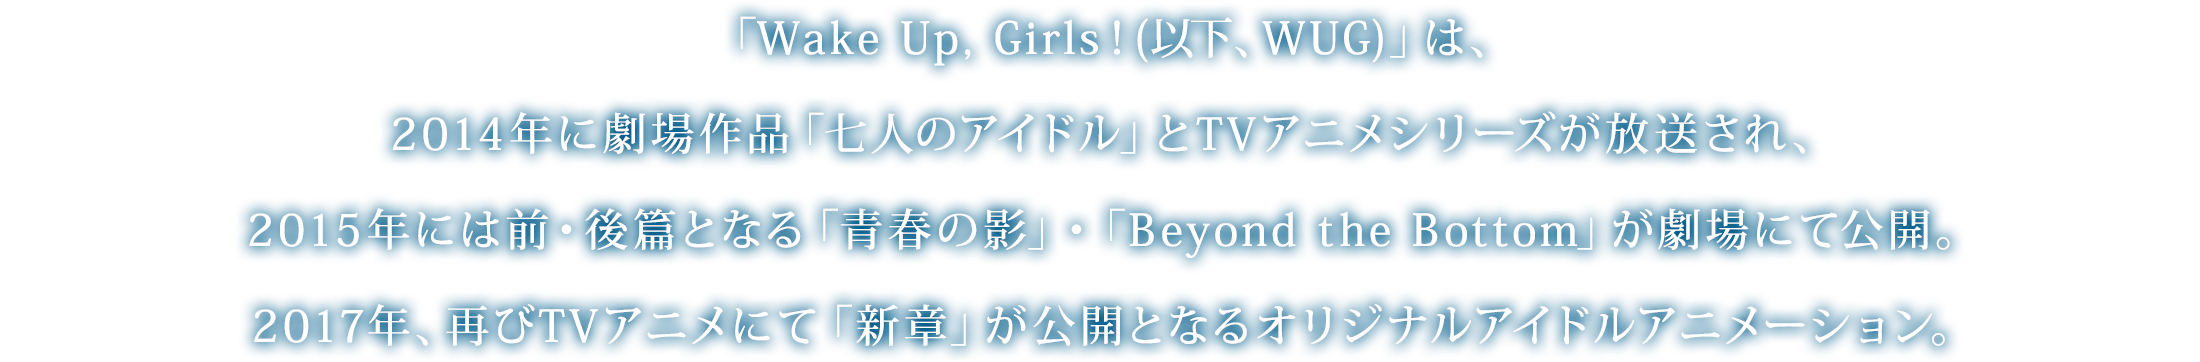 「Wake Up, Girls！(以下、WUG)」は、2014年に劇場作品「七人のアイドル」とTVアニメシリーズが放送され、2015年には前・後篇となる「青春の影」・「Beyond the Bottom」が劇場にて公開。2017年、再びTVアニメにて「新章」が公開となるオリジナルアイドルアニメーション。